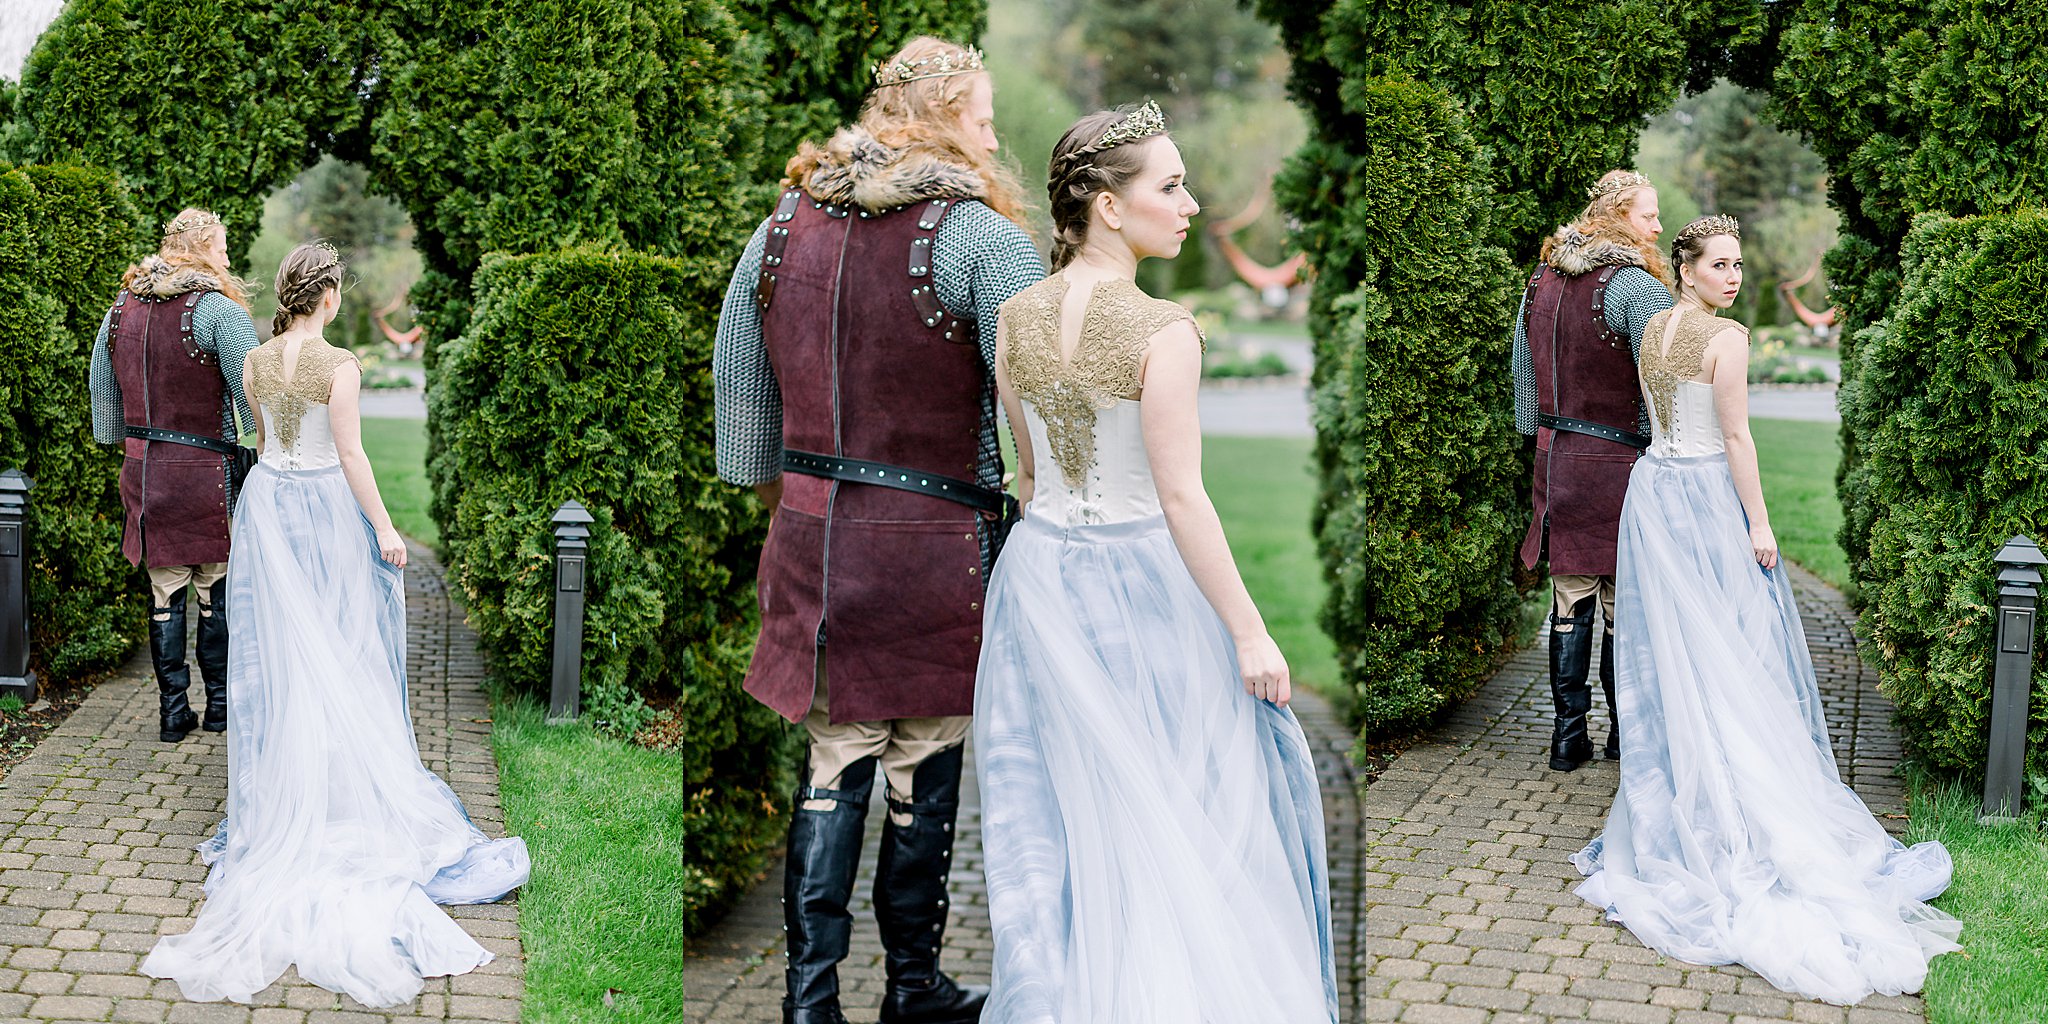 Bride and groom explore gardens at Castle Farms wedding.